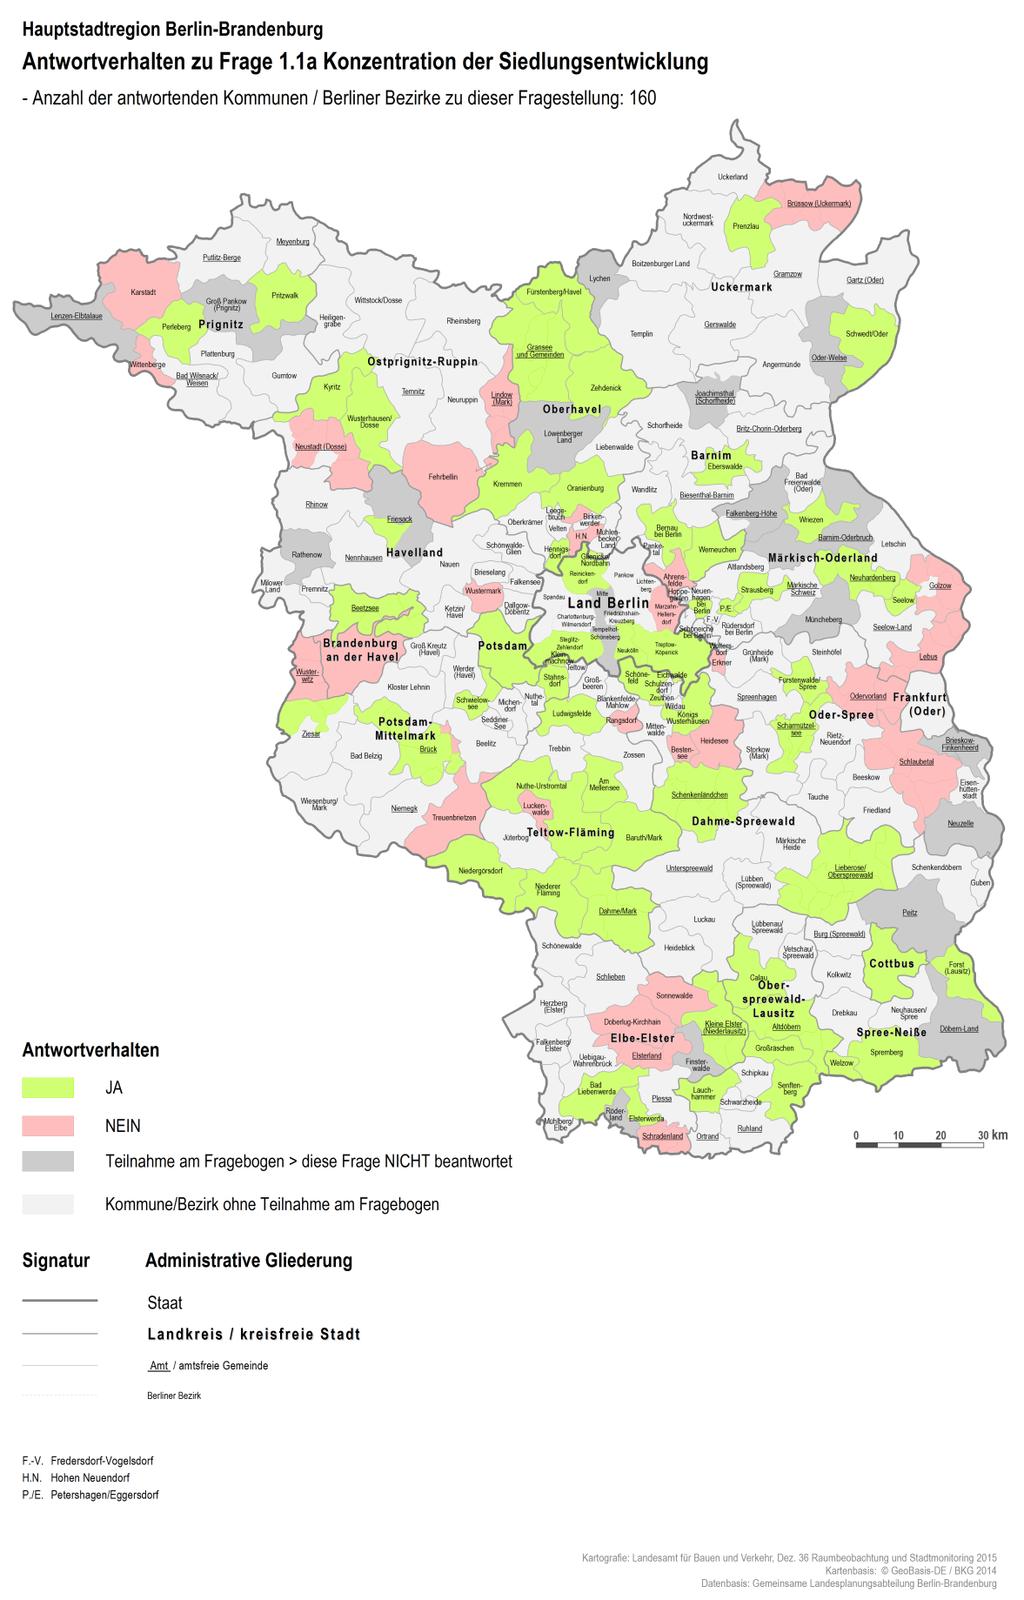 Abbildung 2: Antwortverhalten der Städte und Gemeinden in Brandenburg und der Berliner Bezirke zur Frage 1.